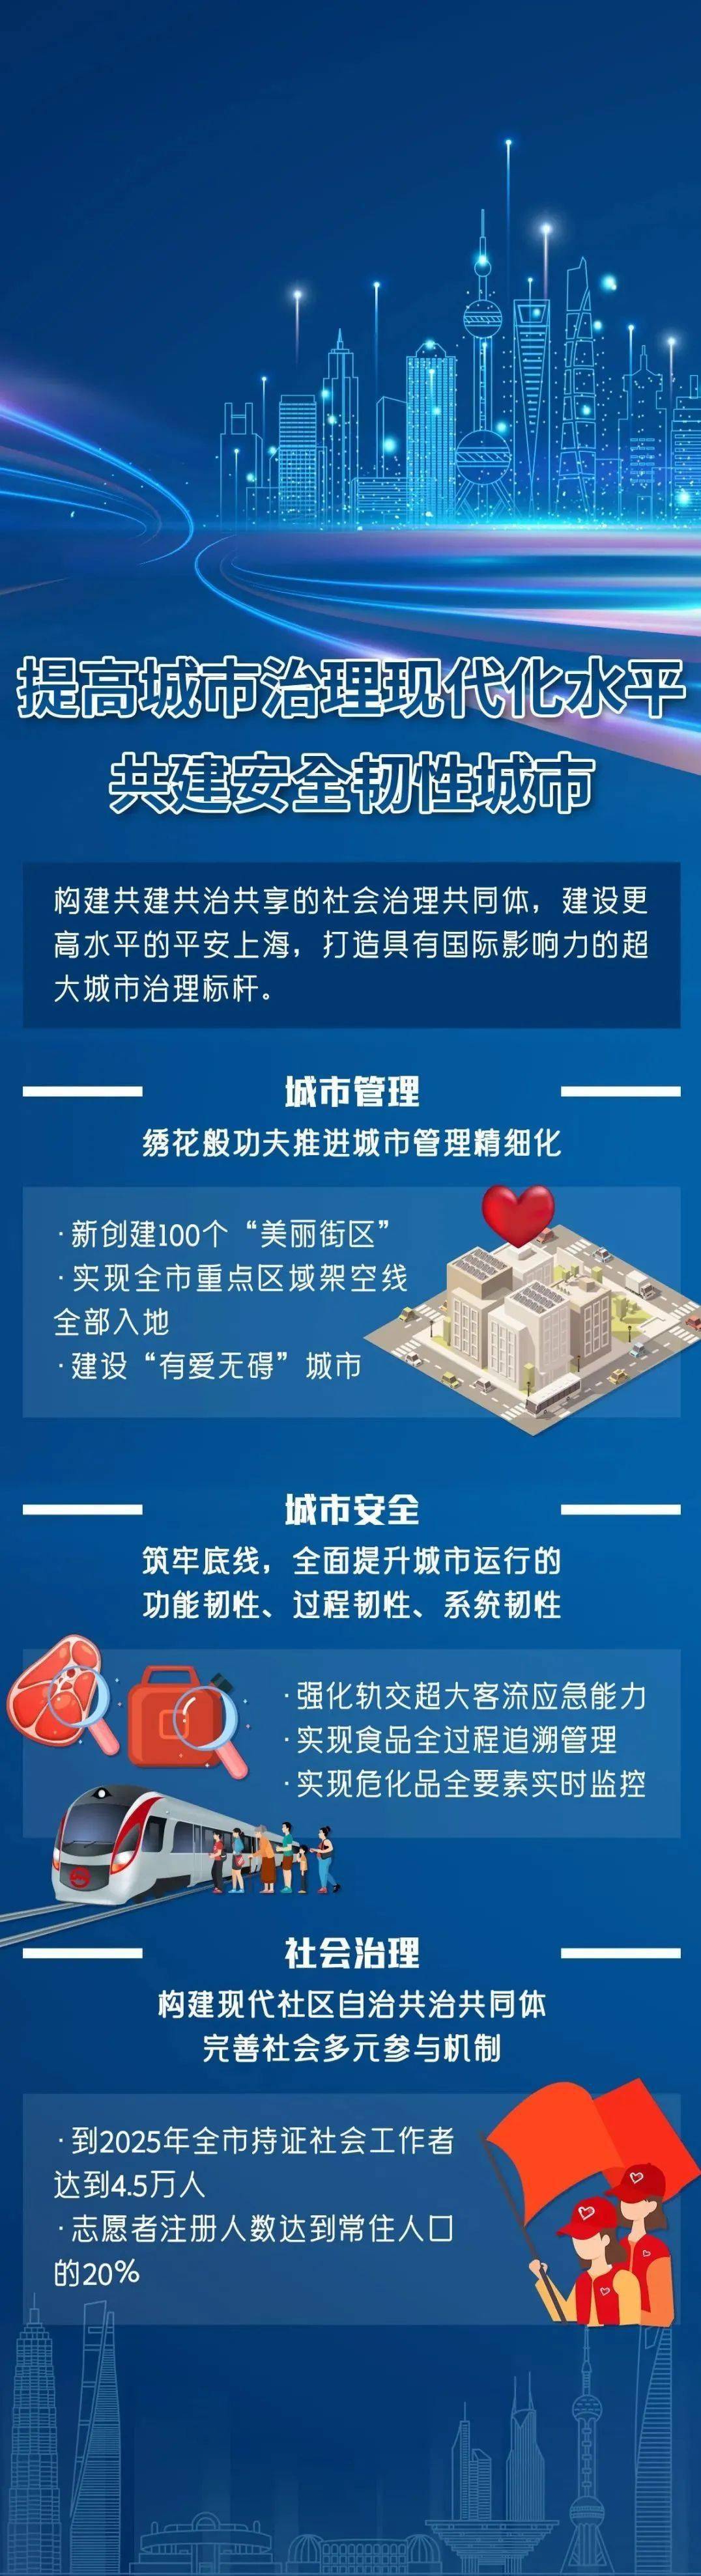 上海市"十四五"规划《纲要》正式发布!